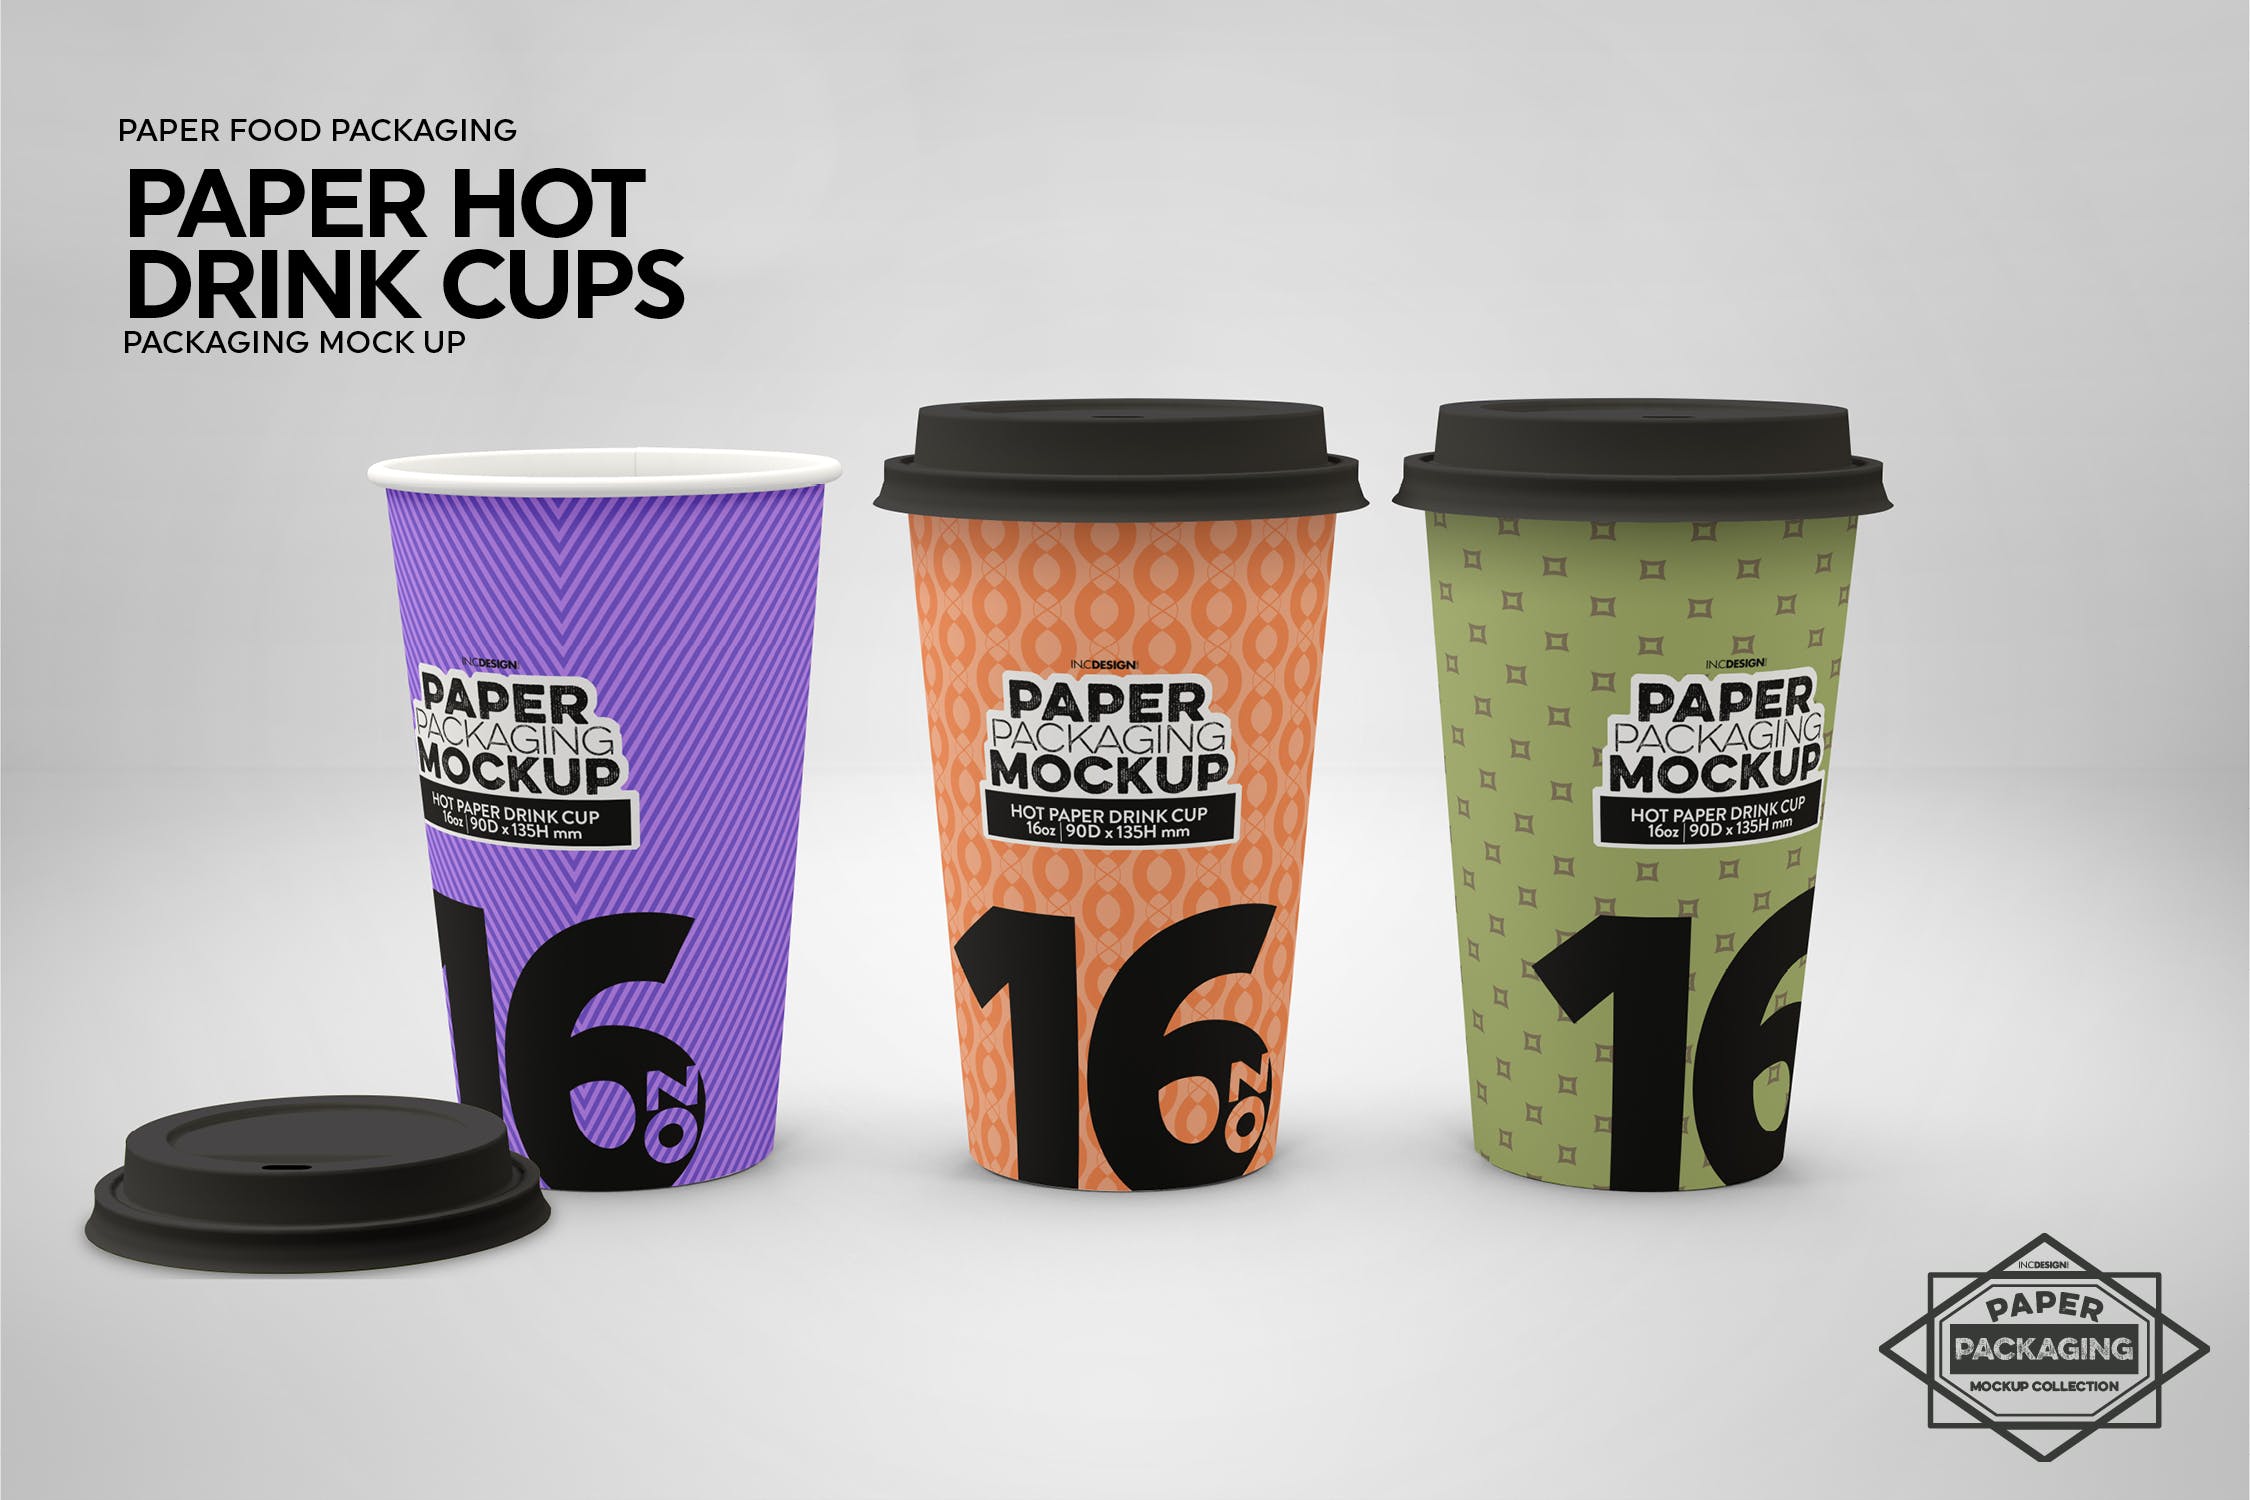 热饮一次性纸杯外观设计样机 Paper Hot Drink